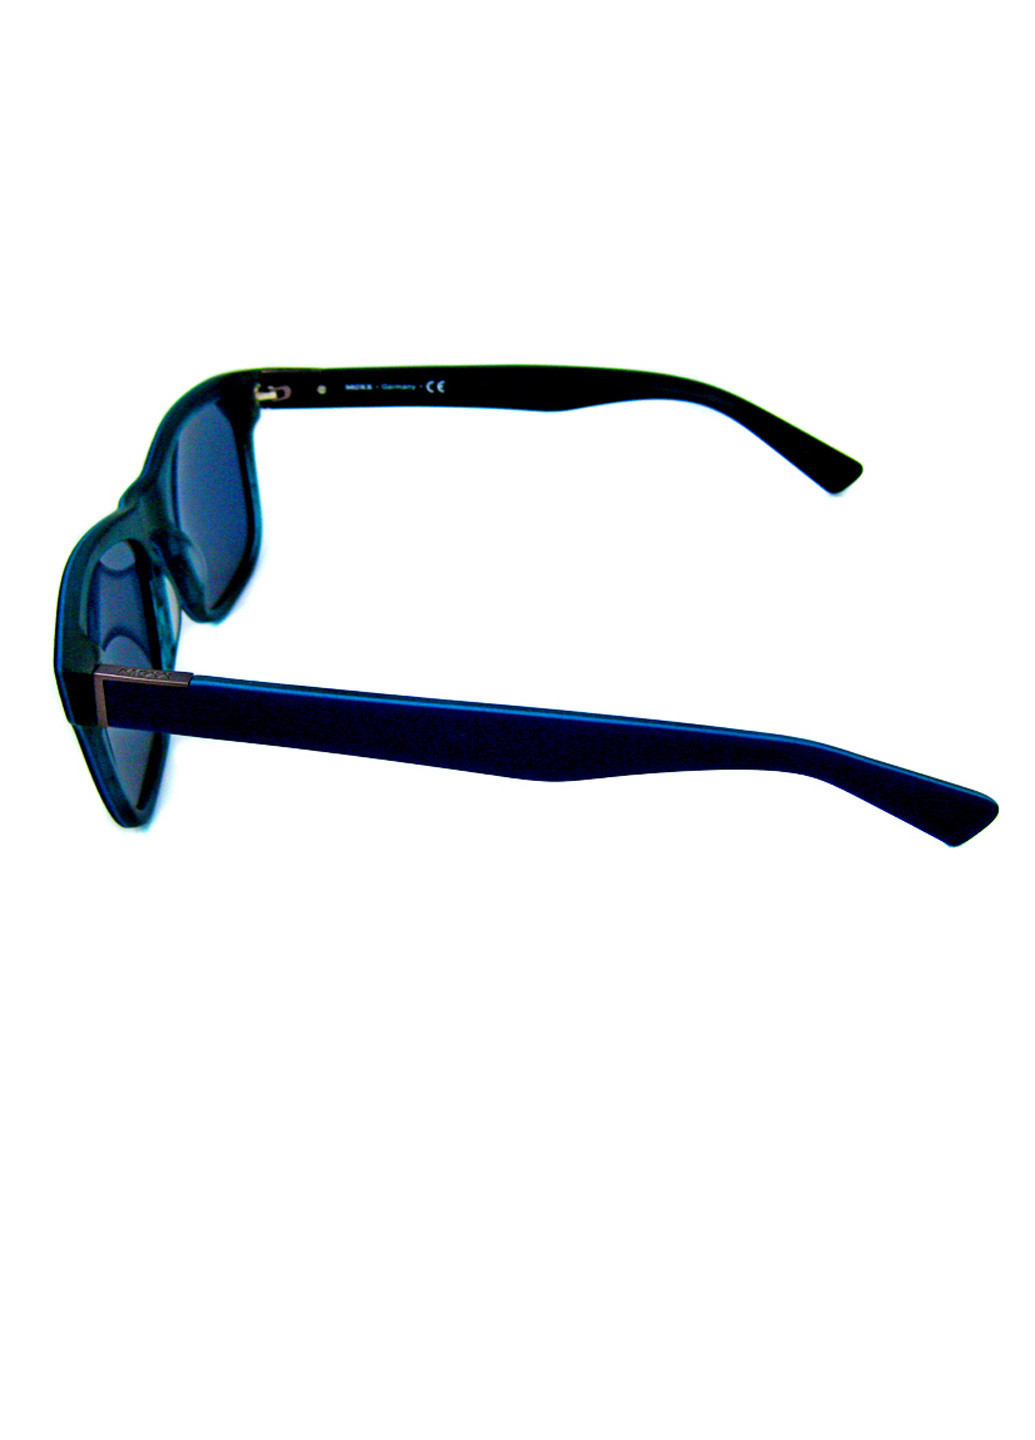 Сонцезахиснi окуляри Mexx m 6368 200 (260582098)